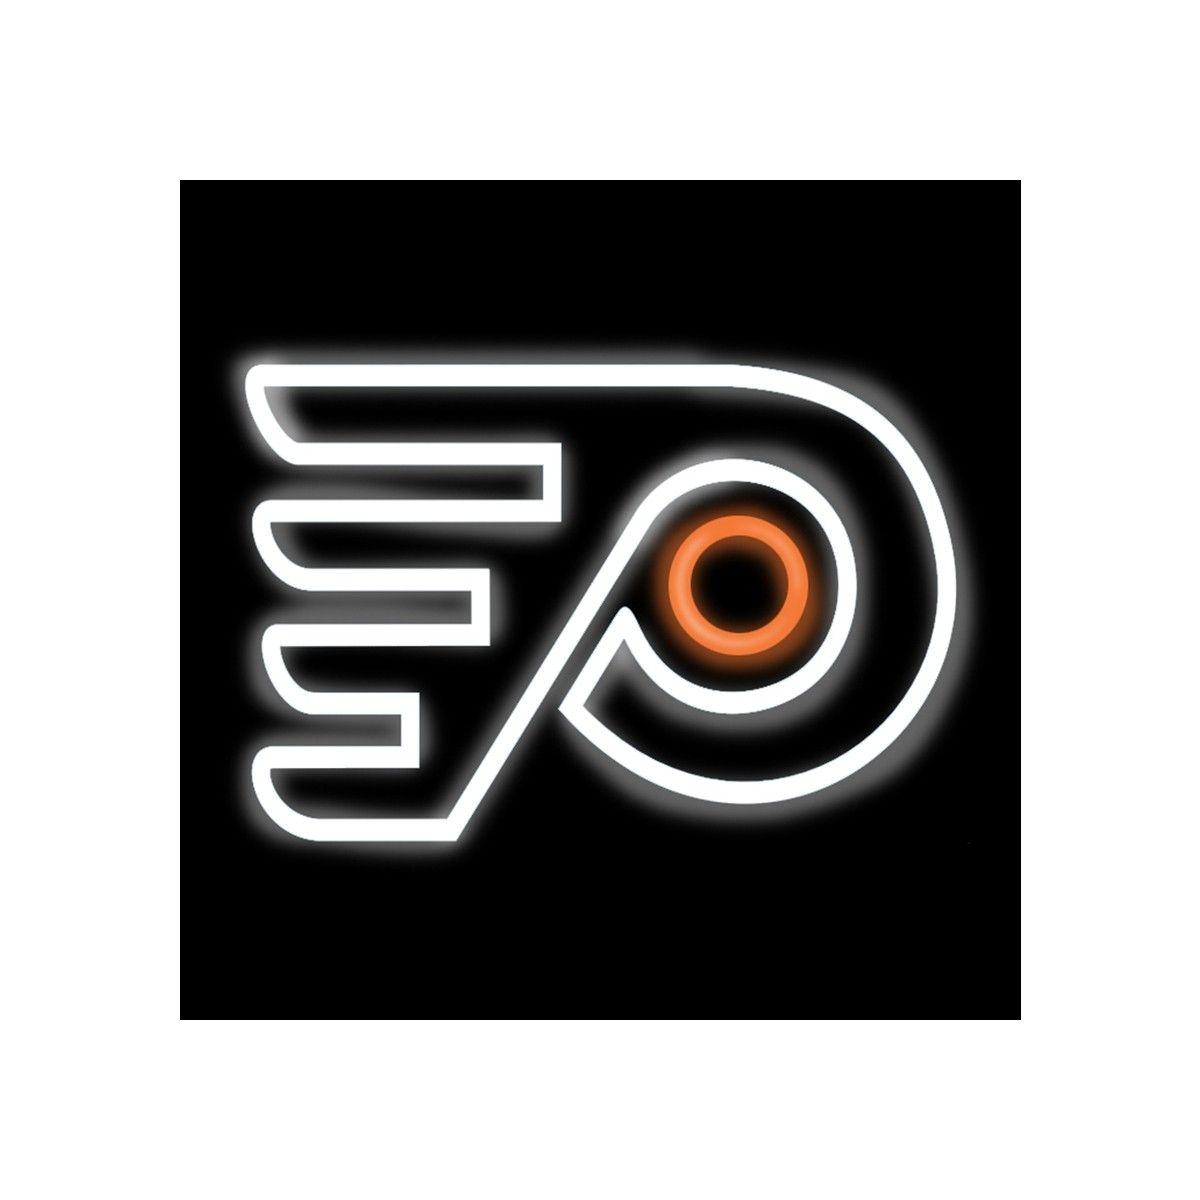 Philadelphia Flyers Logo - Philadelphia Flyers Logo Neon Sign by Imperial Fargo Center